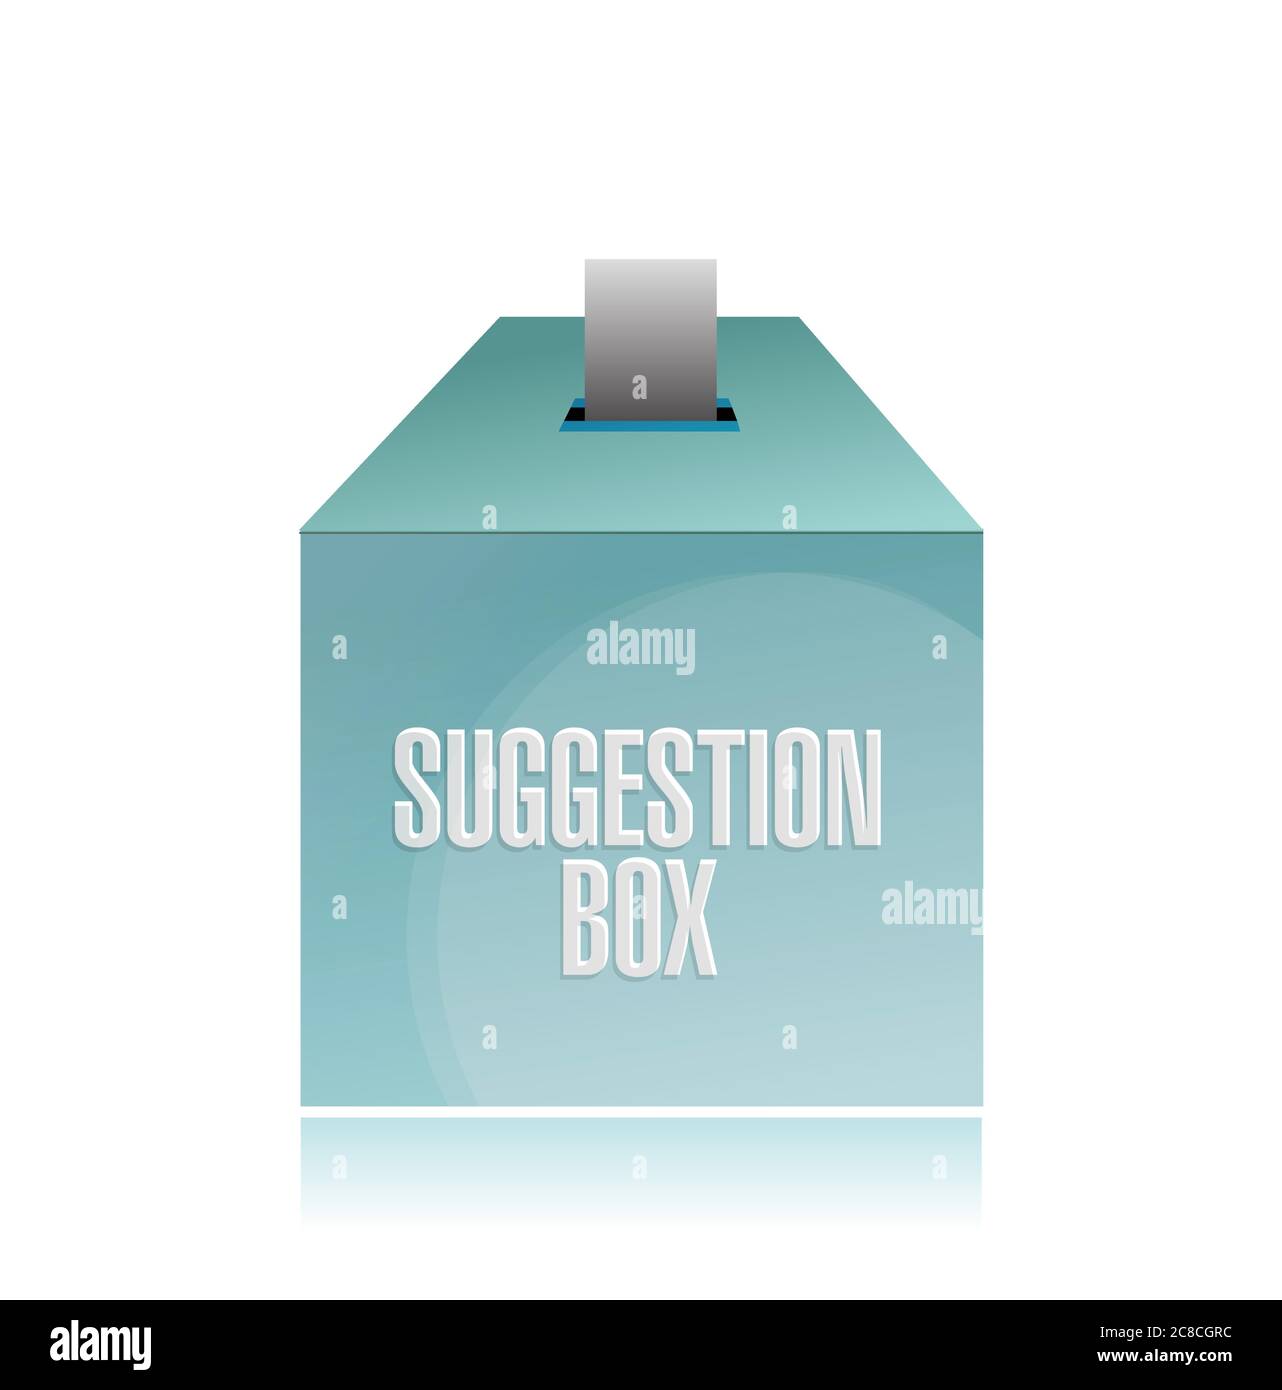 Vorschlag Box Illustration Design auf weißem Hintergrund Stock Vektor